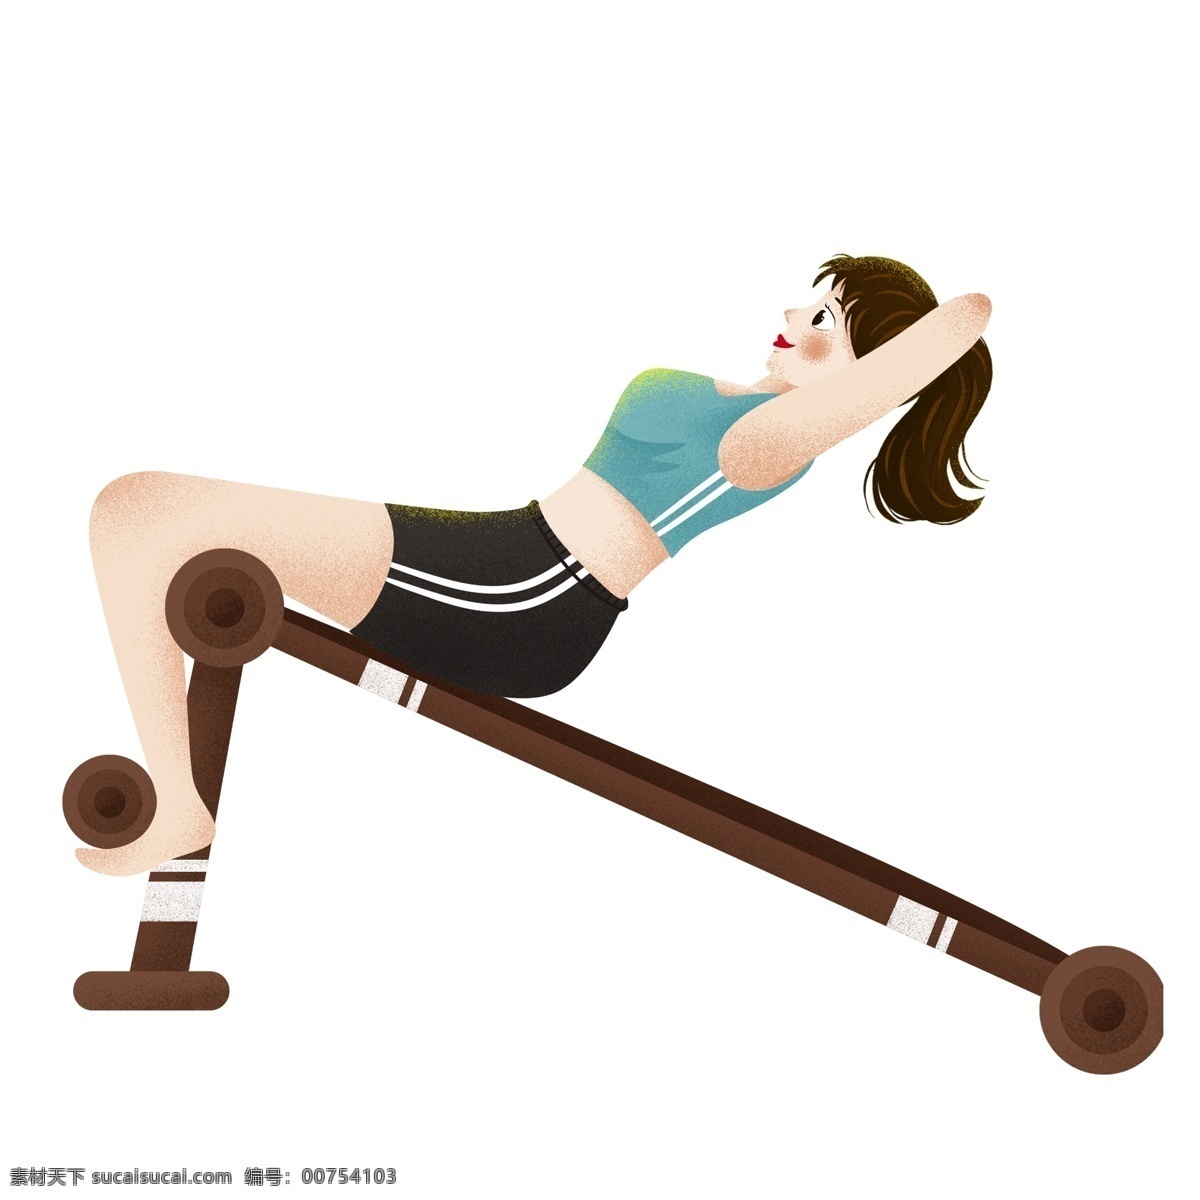 卡通 手绘 做 仰卧起坐 健身 女孩 插画 少女 女生 锻炼 人物素材 早安